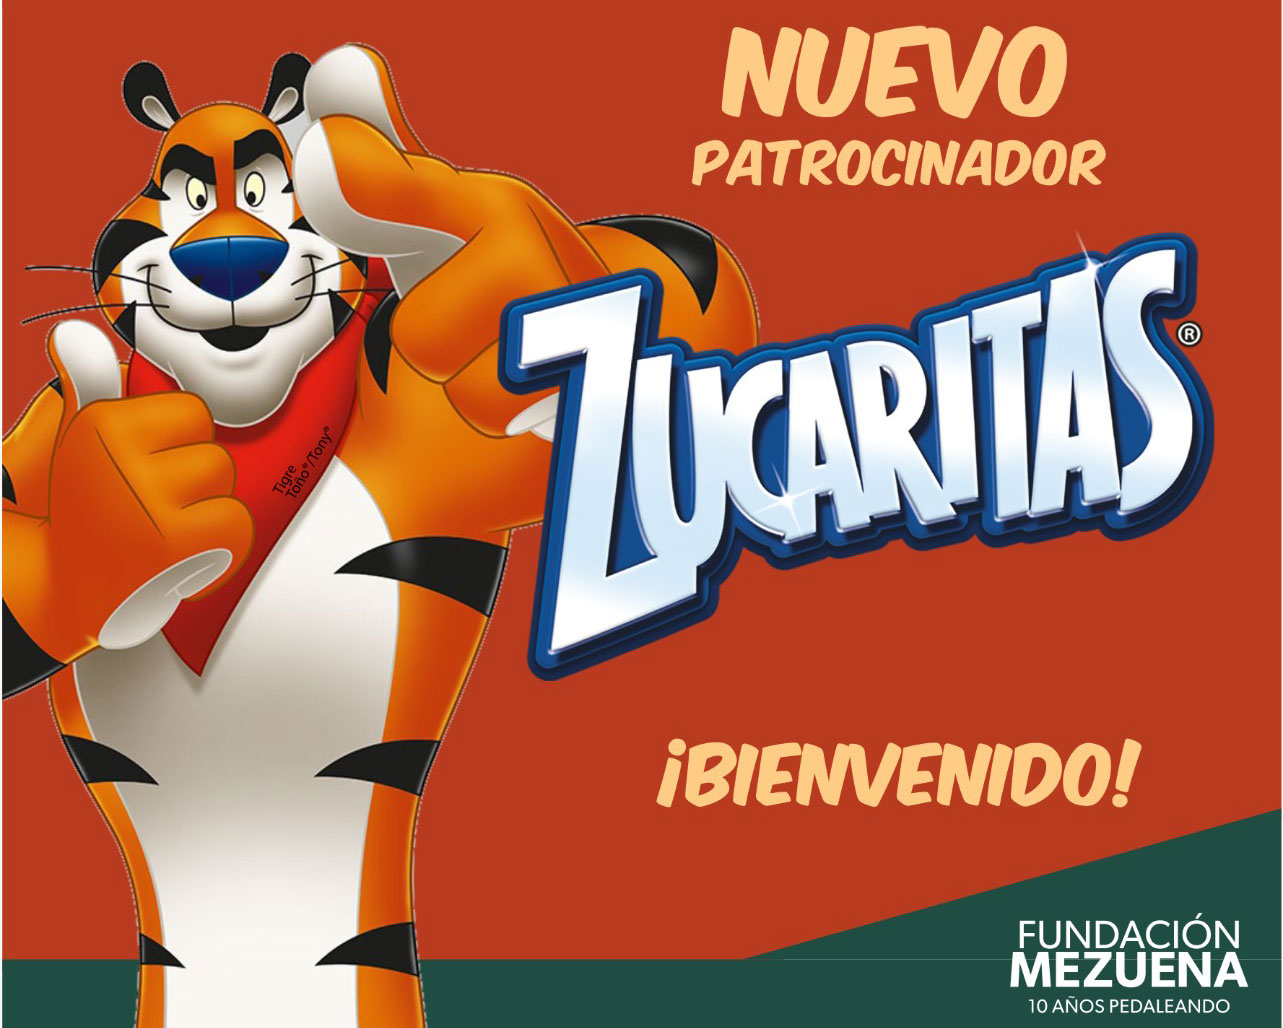 NUEVO PATROCINADOR: Bienvenido Zucaritas 